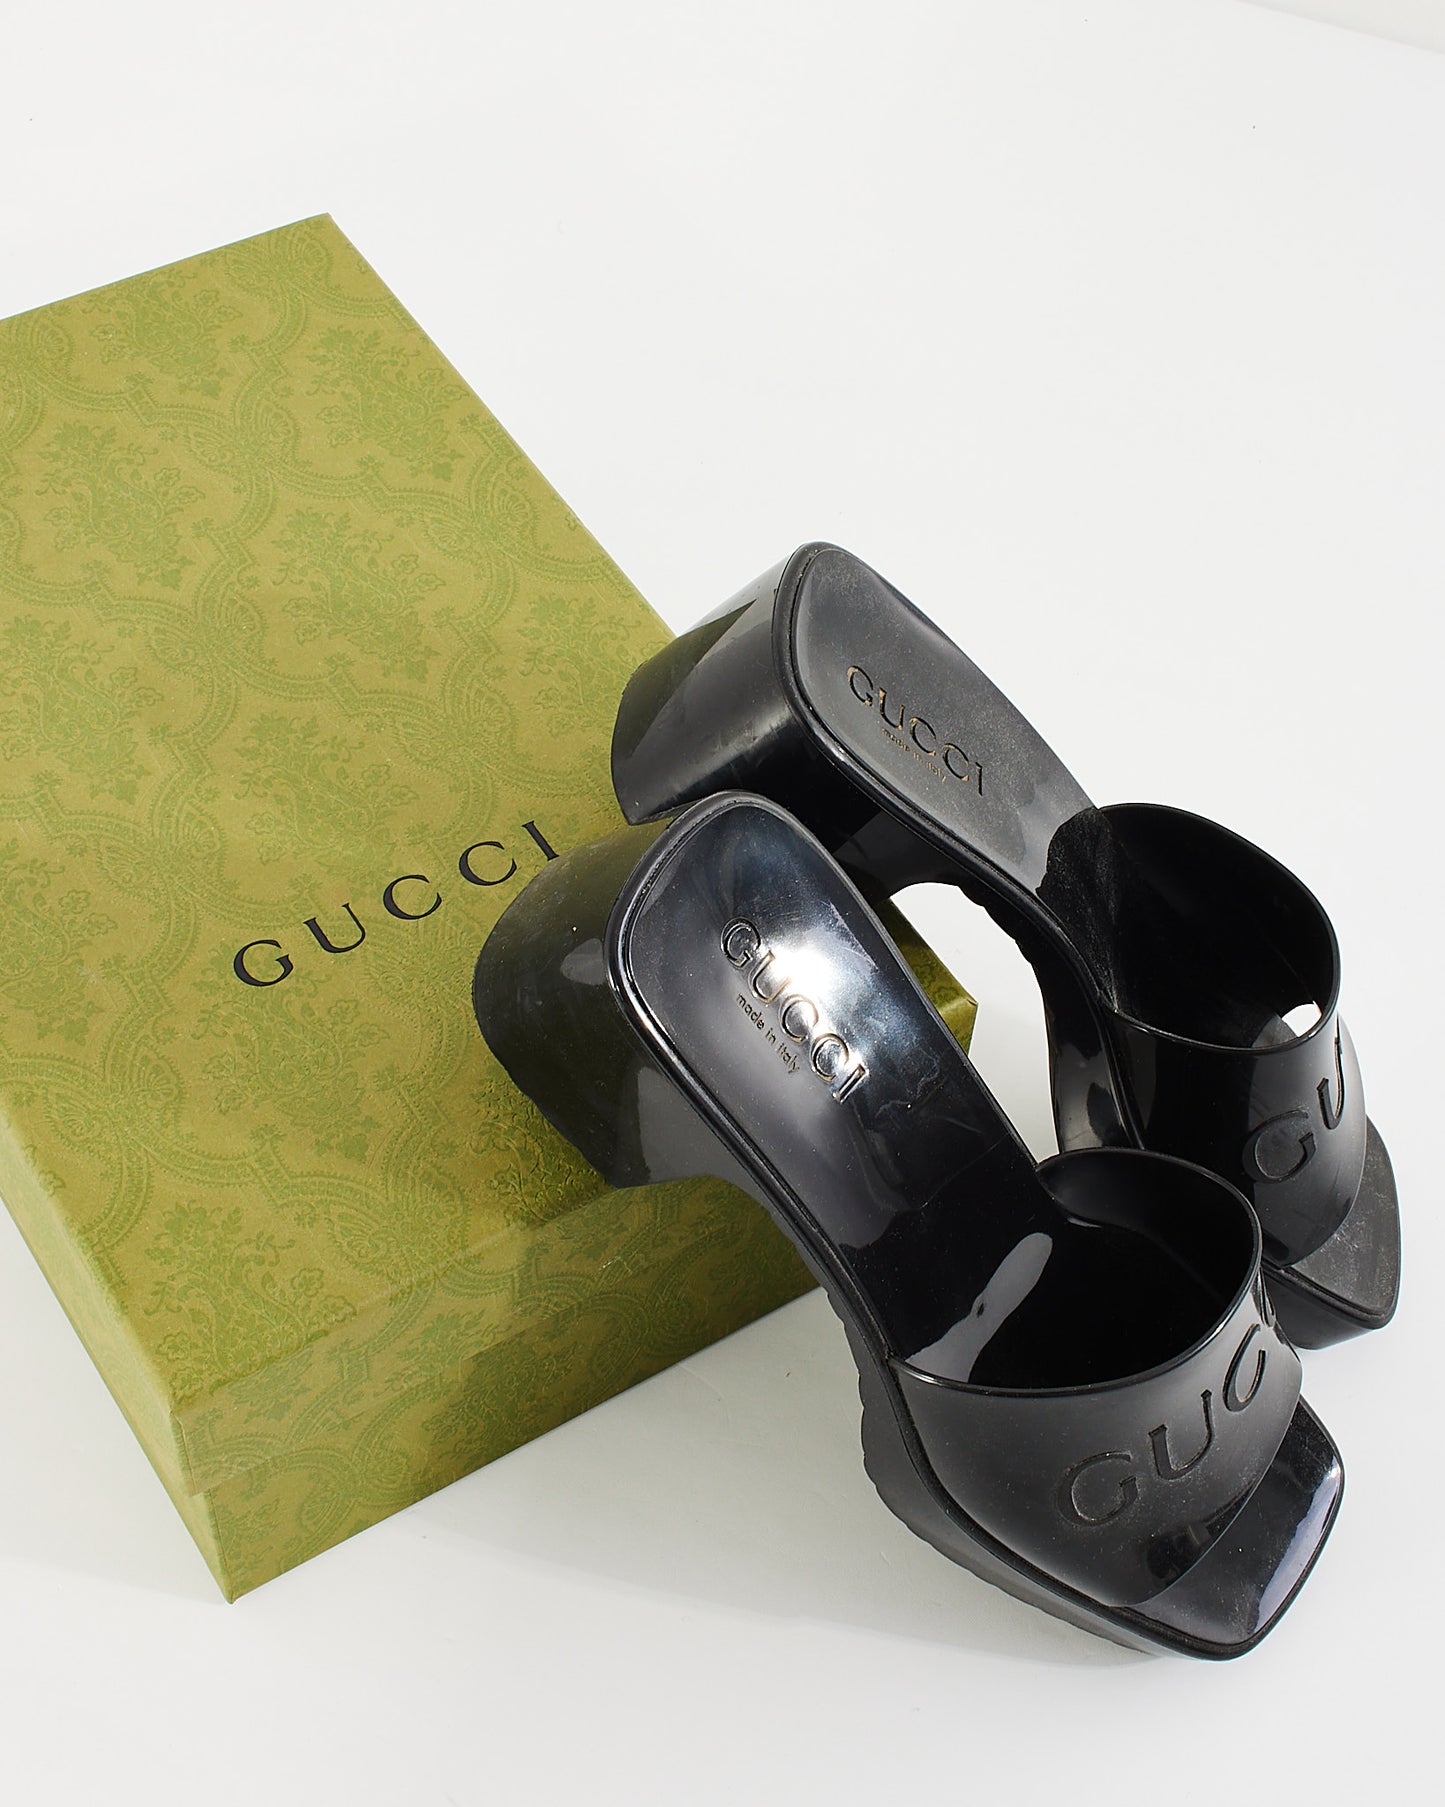 Gucci Black Rubber Platform Slide Sandals - 37